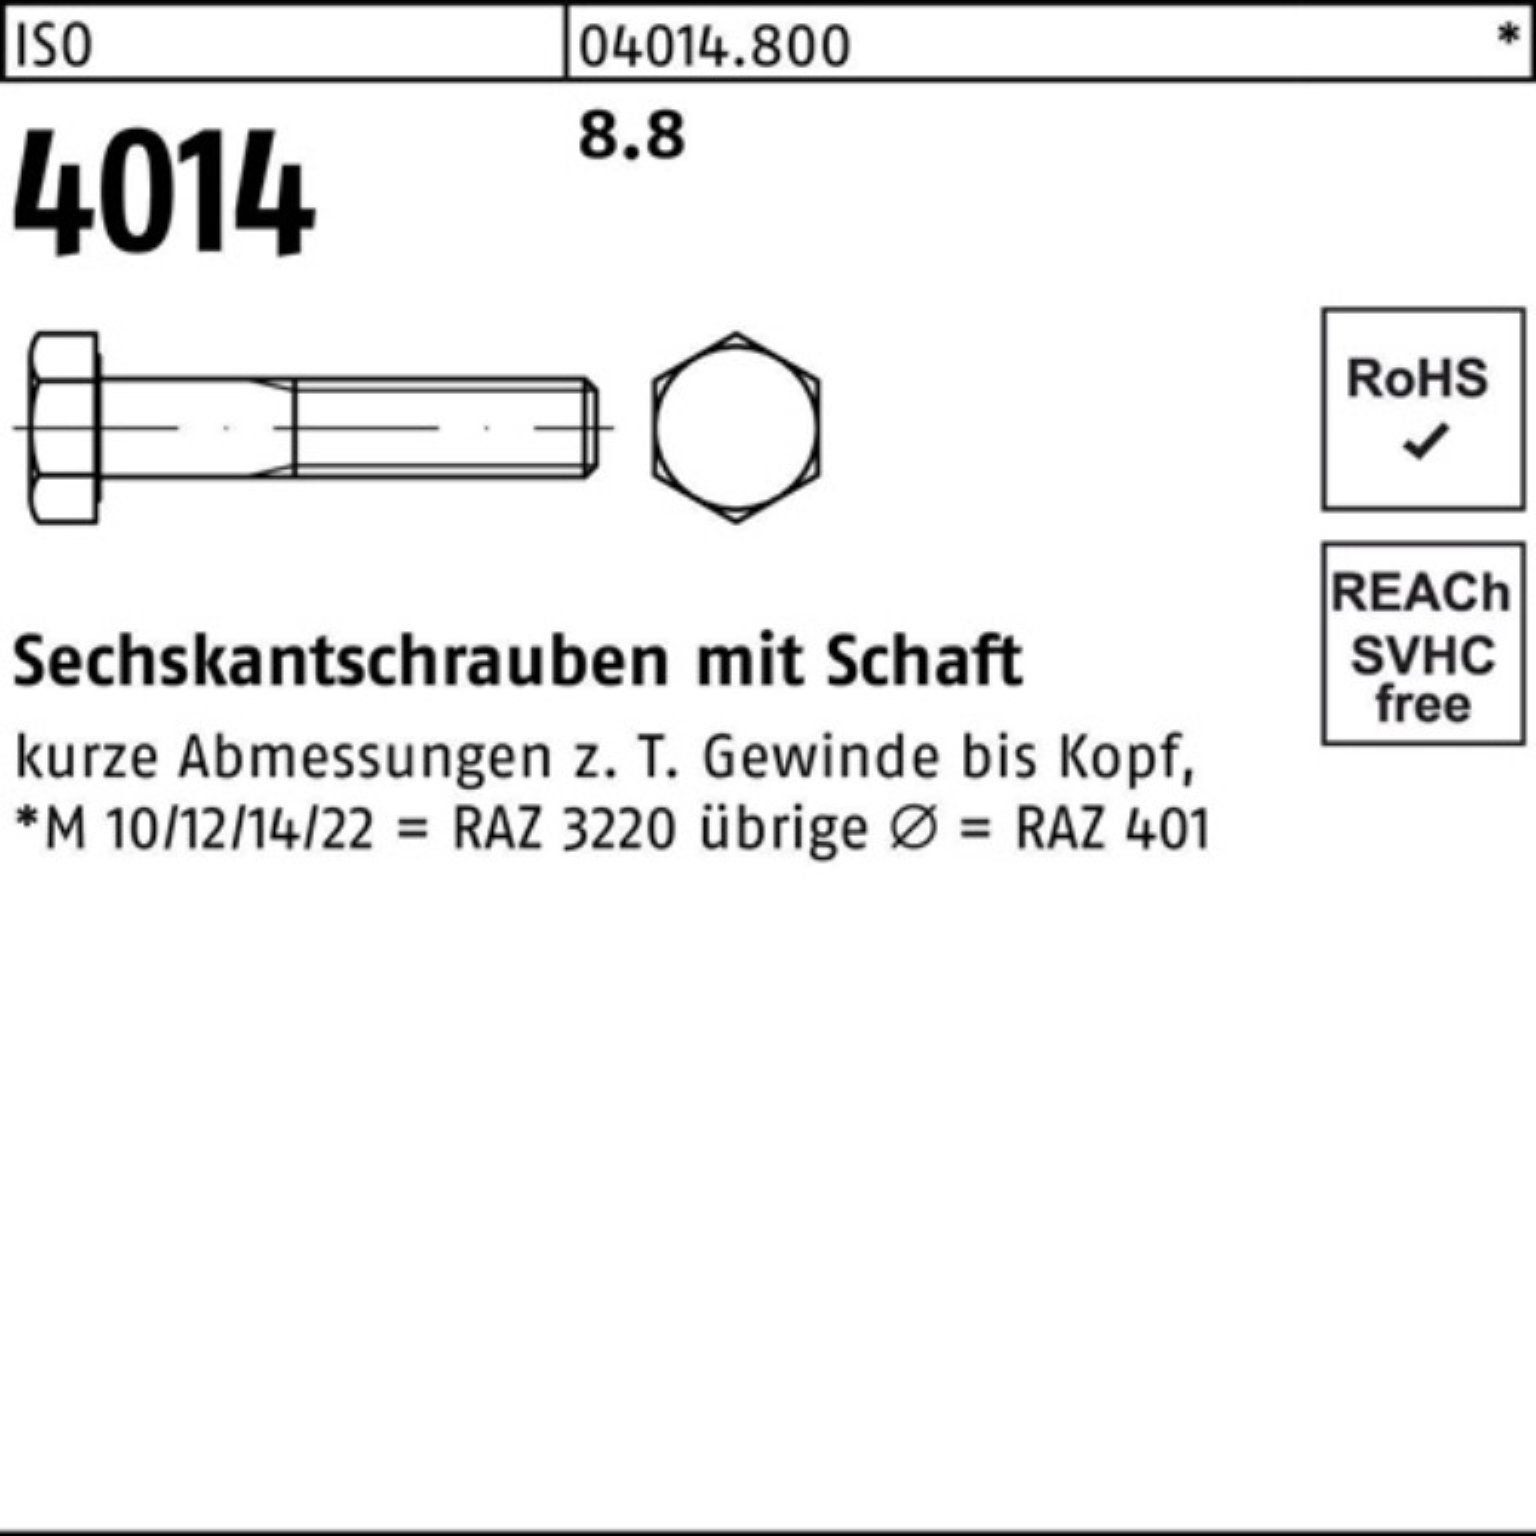 Bufab Sechskantschraube Pack 1 4014 ISO ISO 100er Stück 8.8 M36x 500 Schaft Sechskantschraube